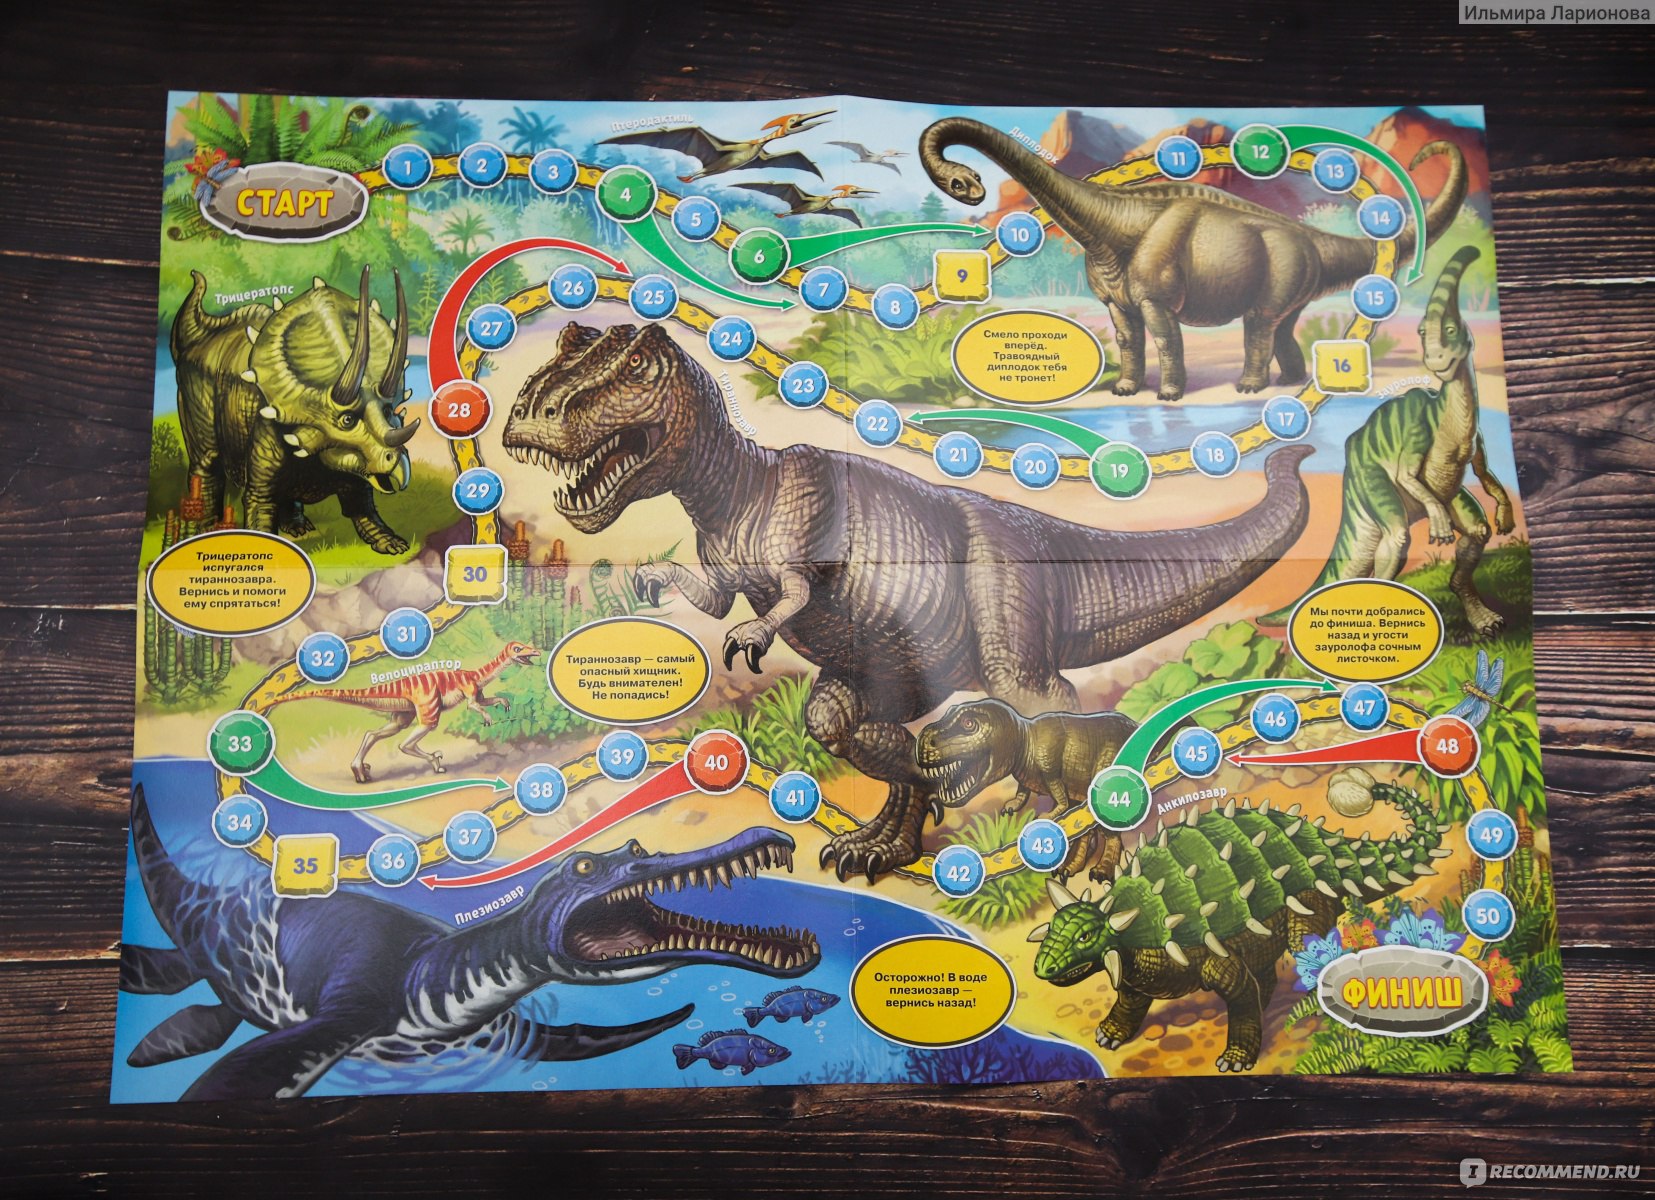 Динозавры играют дети. Игра-бродилка "мир динозавров" 4973107. Игра бродилка для детей динозавры. Настольная игра ходилка динозавры. Настольная игра с динозаврами для детей.